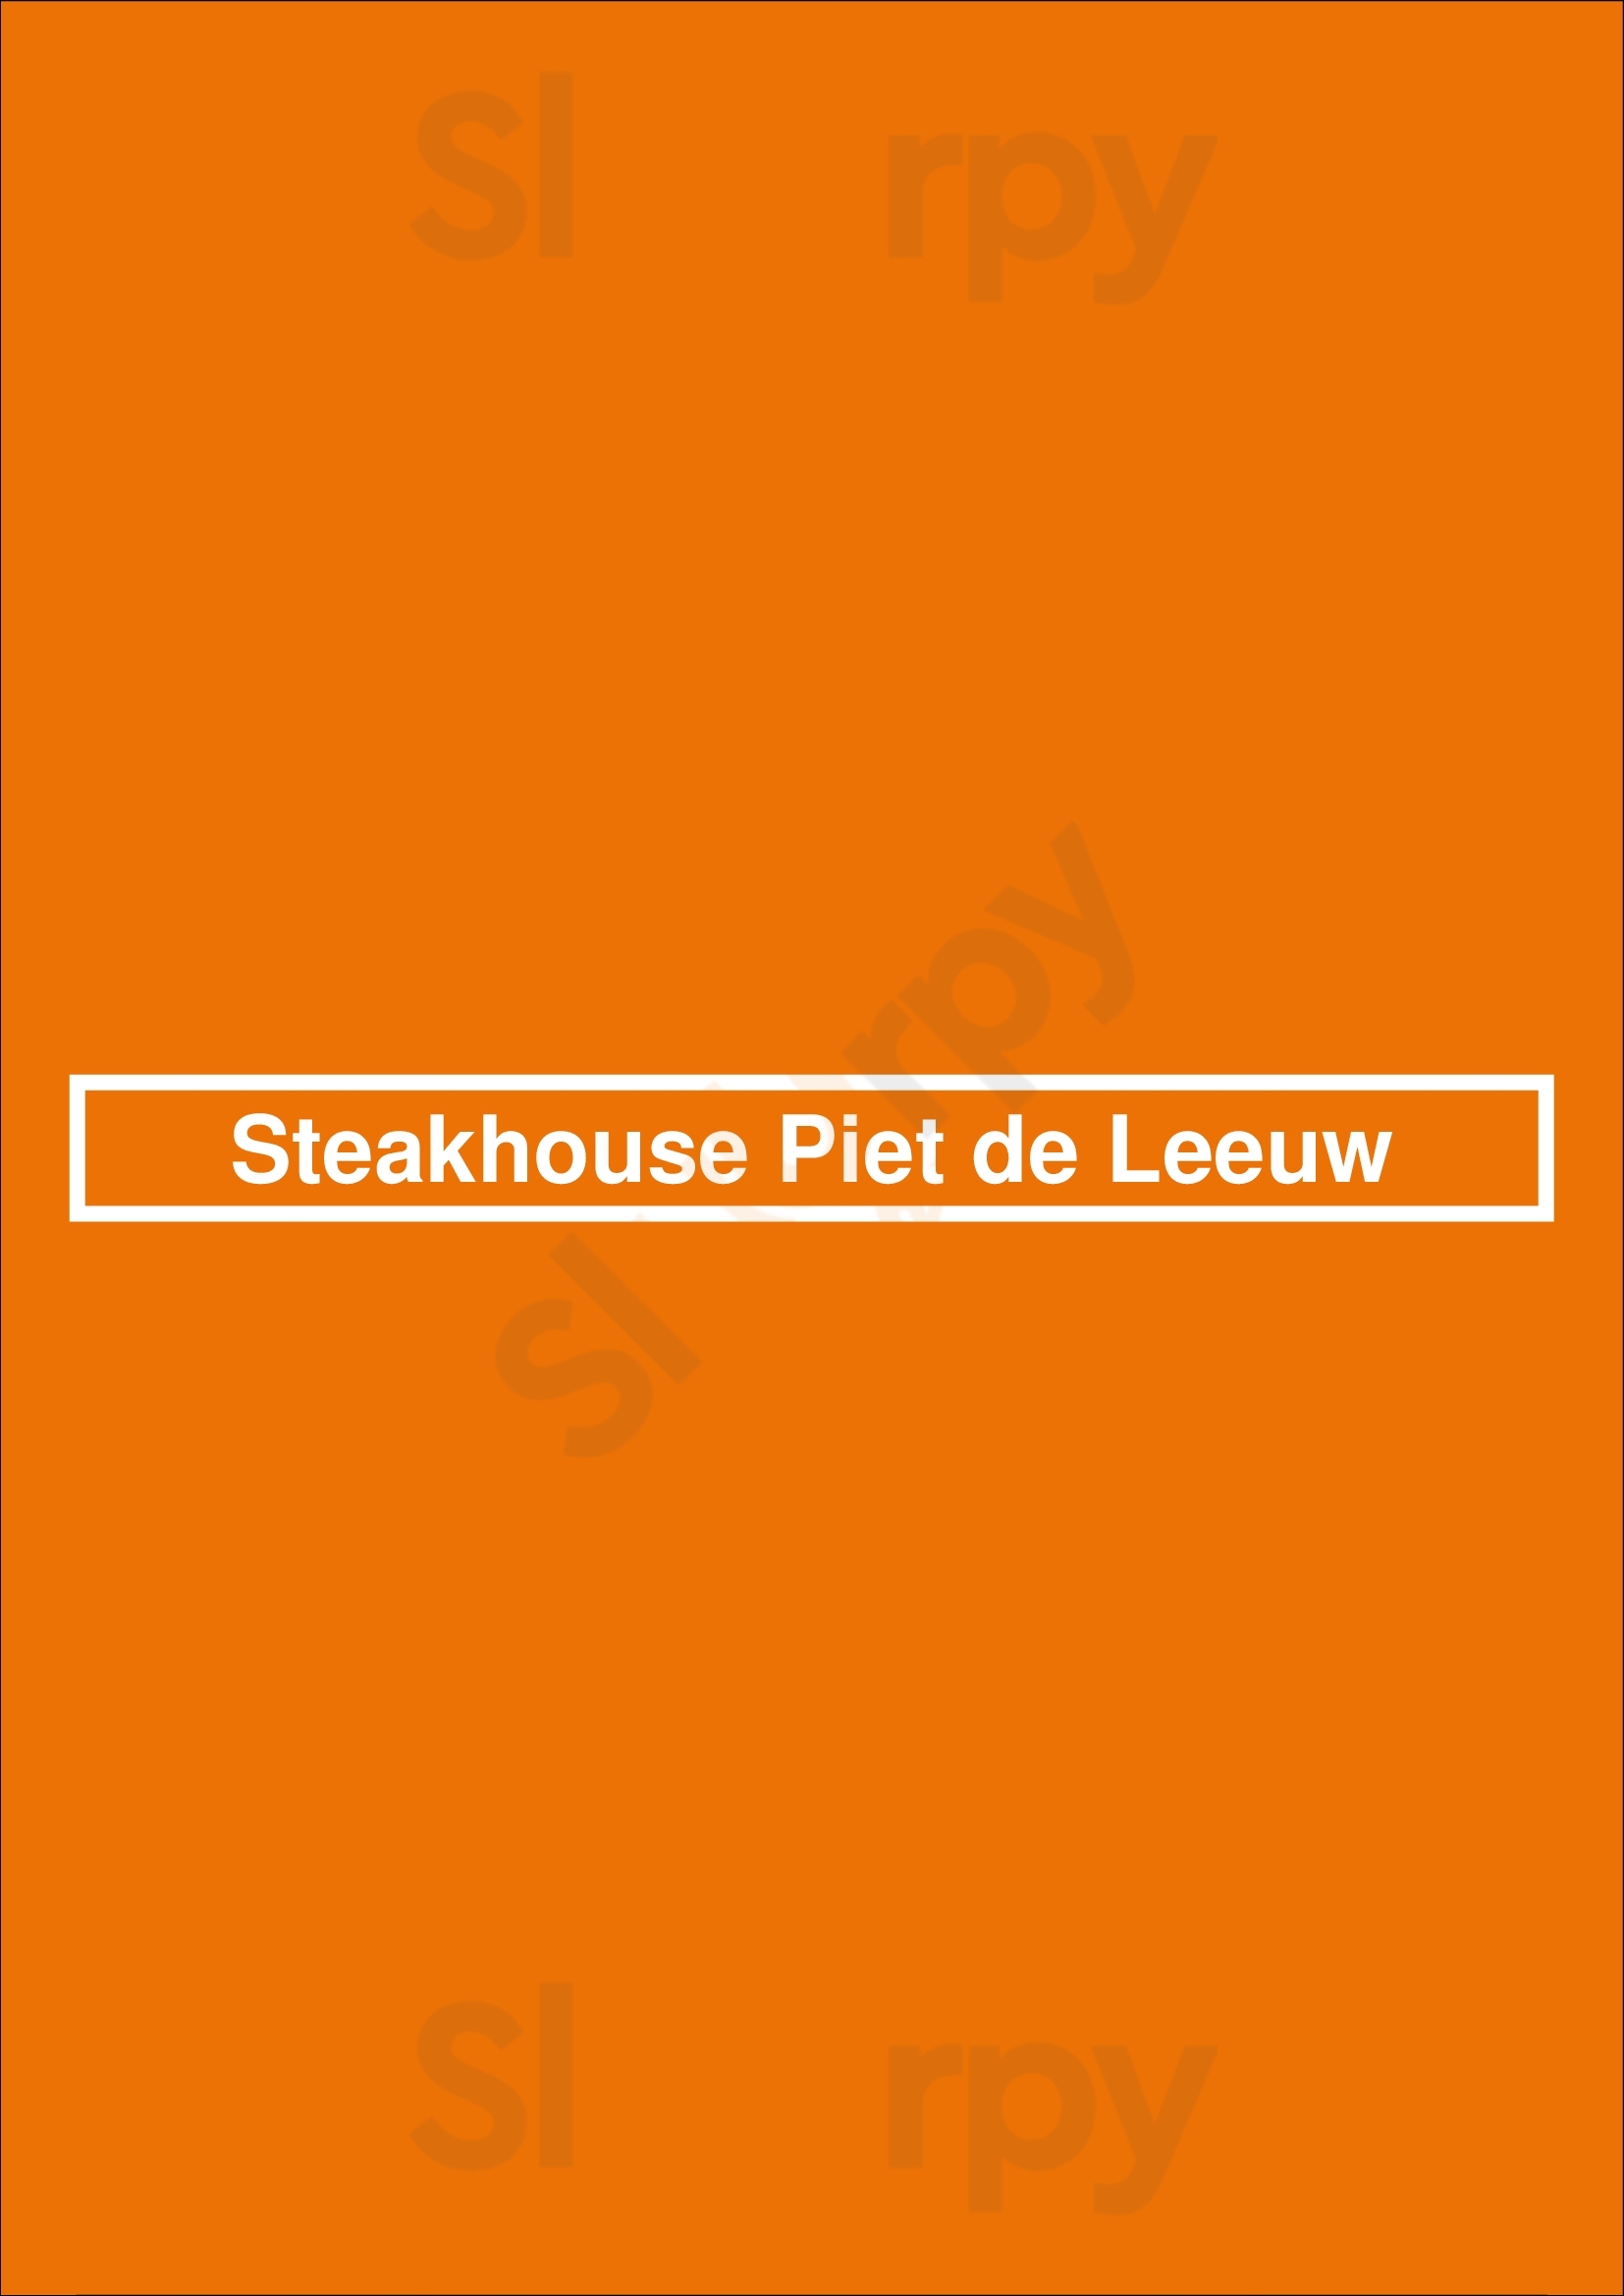 Steakhouse Piet De Leeuw Amsterdam Menu - 1